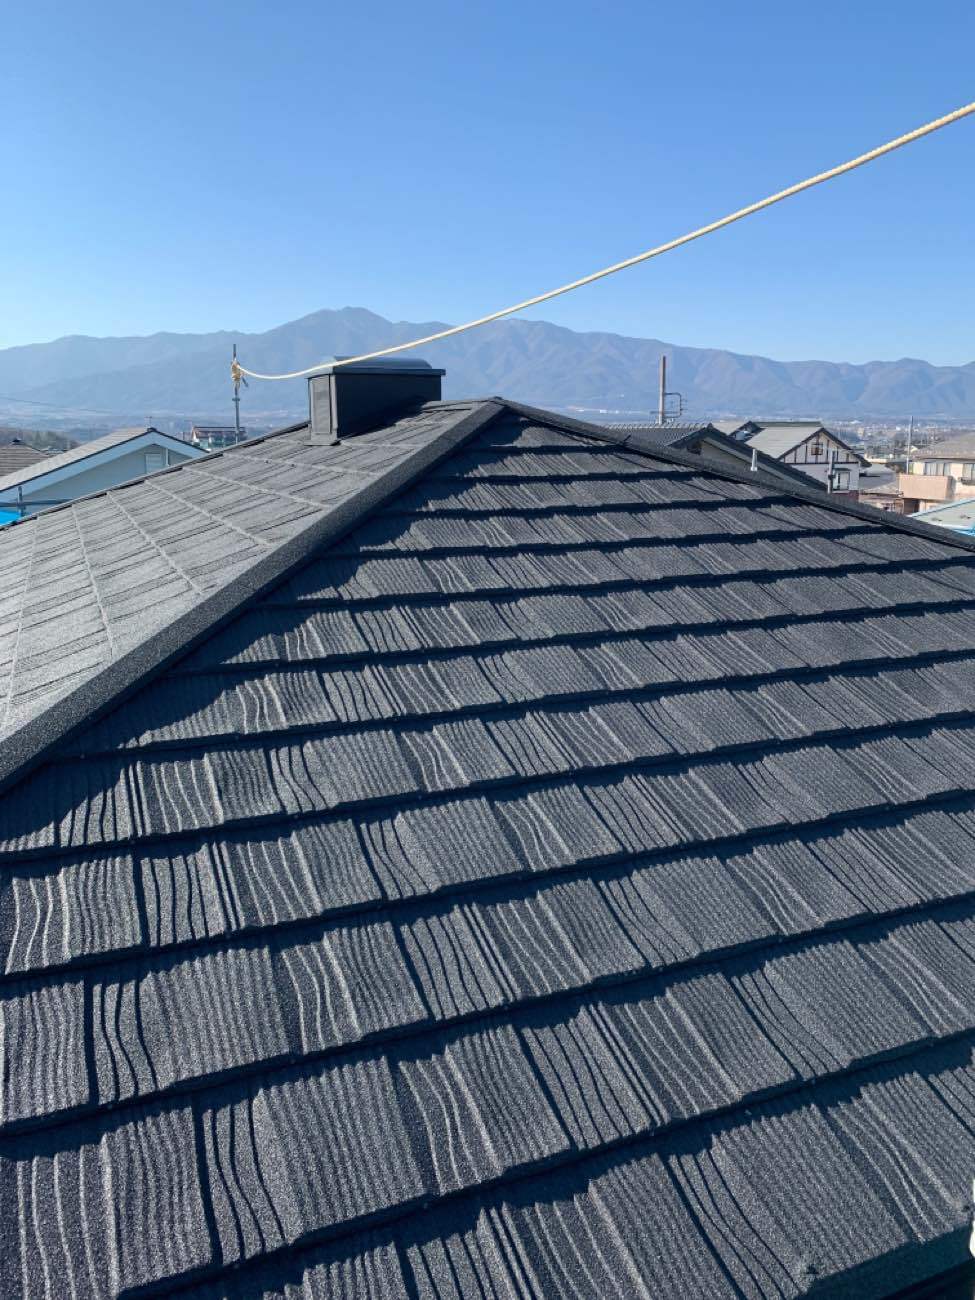 長野県伊那市で屋根をLIXILのTルーフで葺き替えリフォームを行いました。 写真